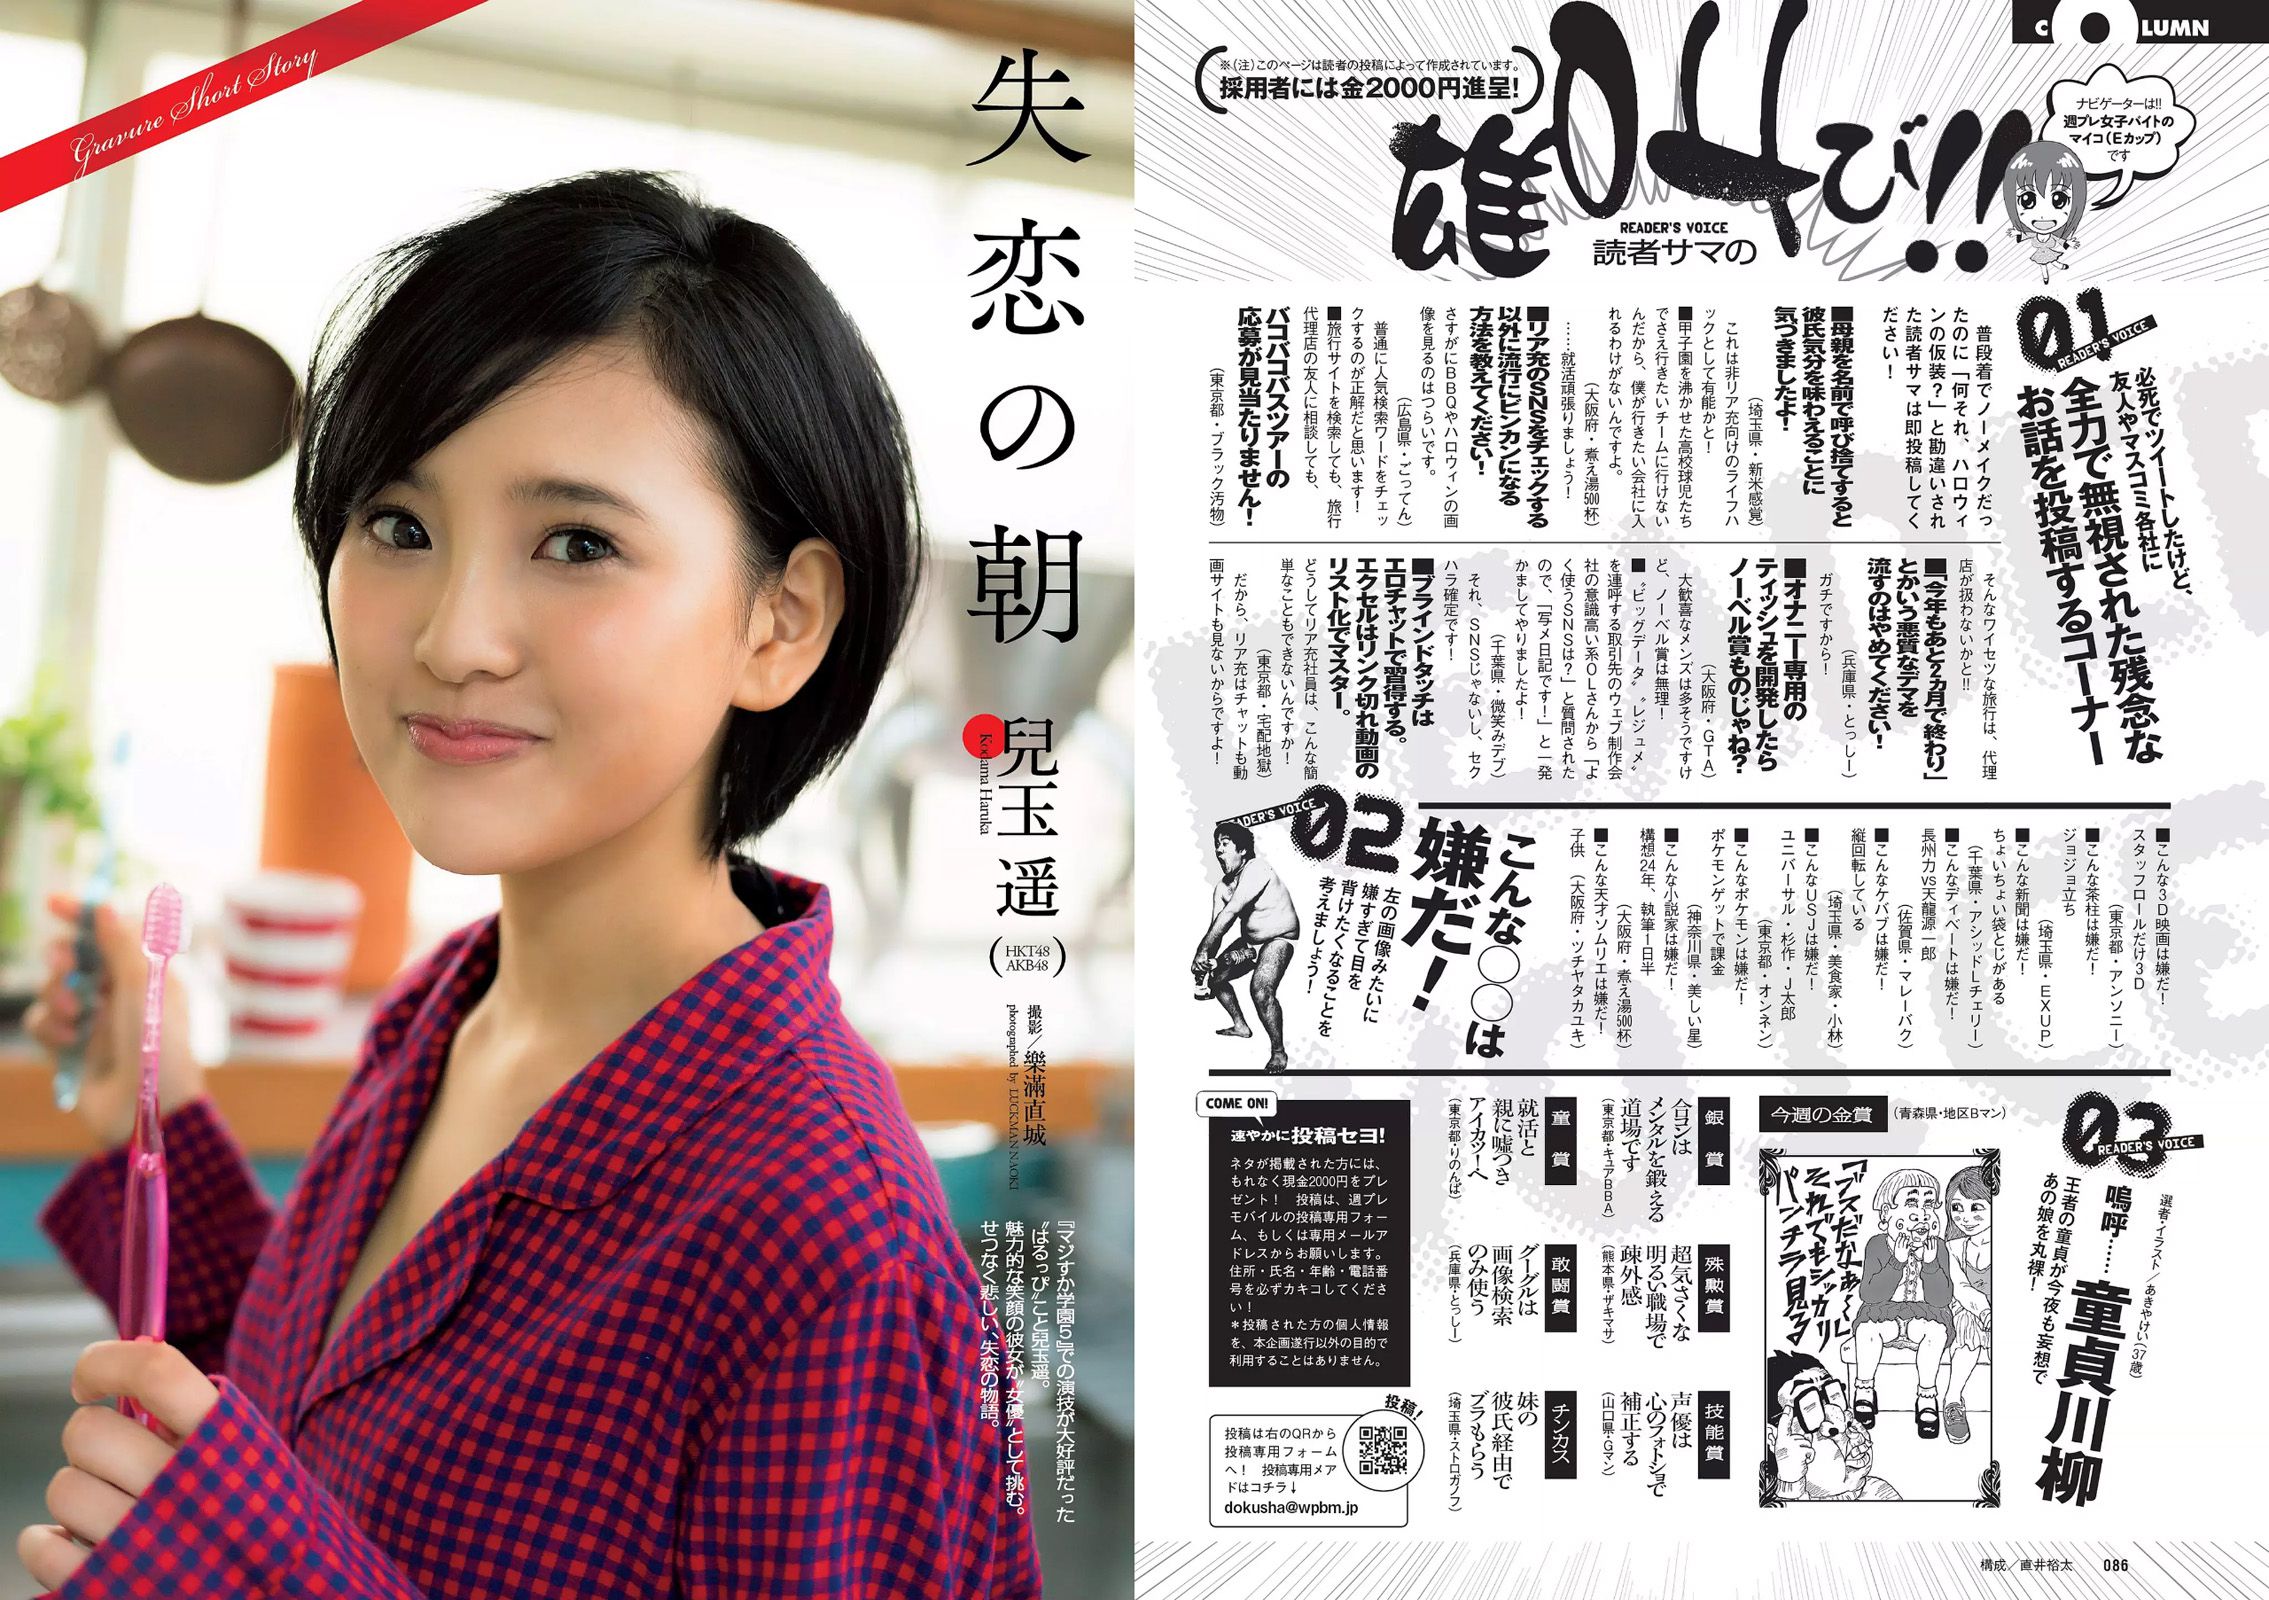 Miwako Kakei Keyakizaka46 Rina Asakawa Reiko Fujiwara Haruka Kodama Kaho Sakaguchi Misa Hayashi Miku Abeno [Weekly Playboy] 2015 No.46 Photograph Page 13 No.f0f439